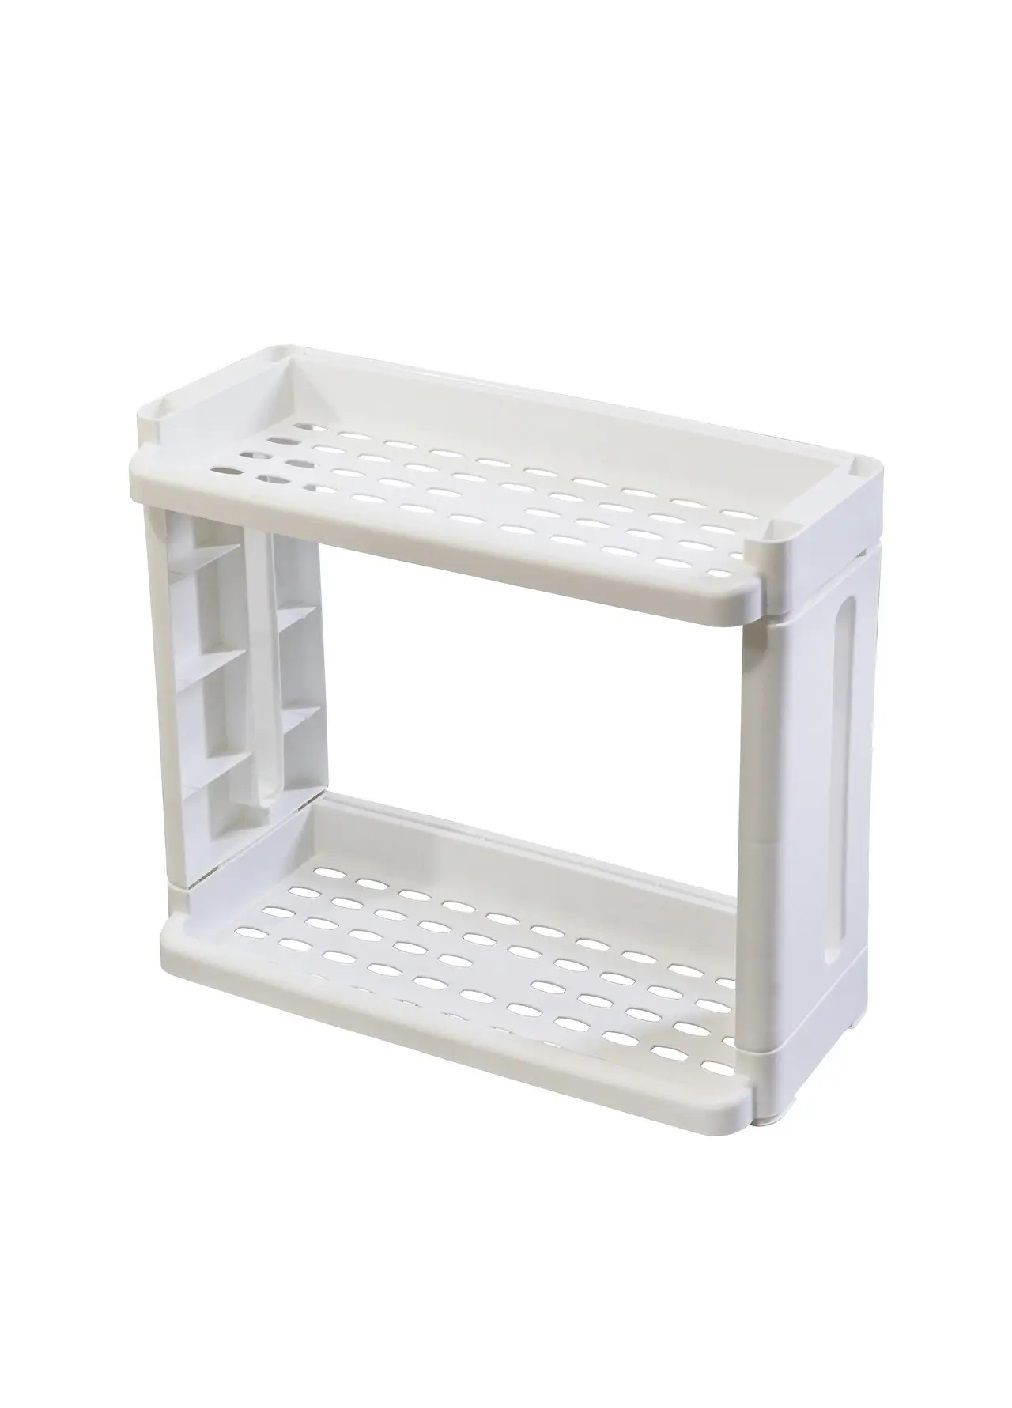 Органайзер этажерка стеллаж двухъярусный 2 полки для хранения вещей в ванной кухне кладовой 40х15х33 см (476689-Prob) Белый Unbranded (288535828)